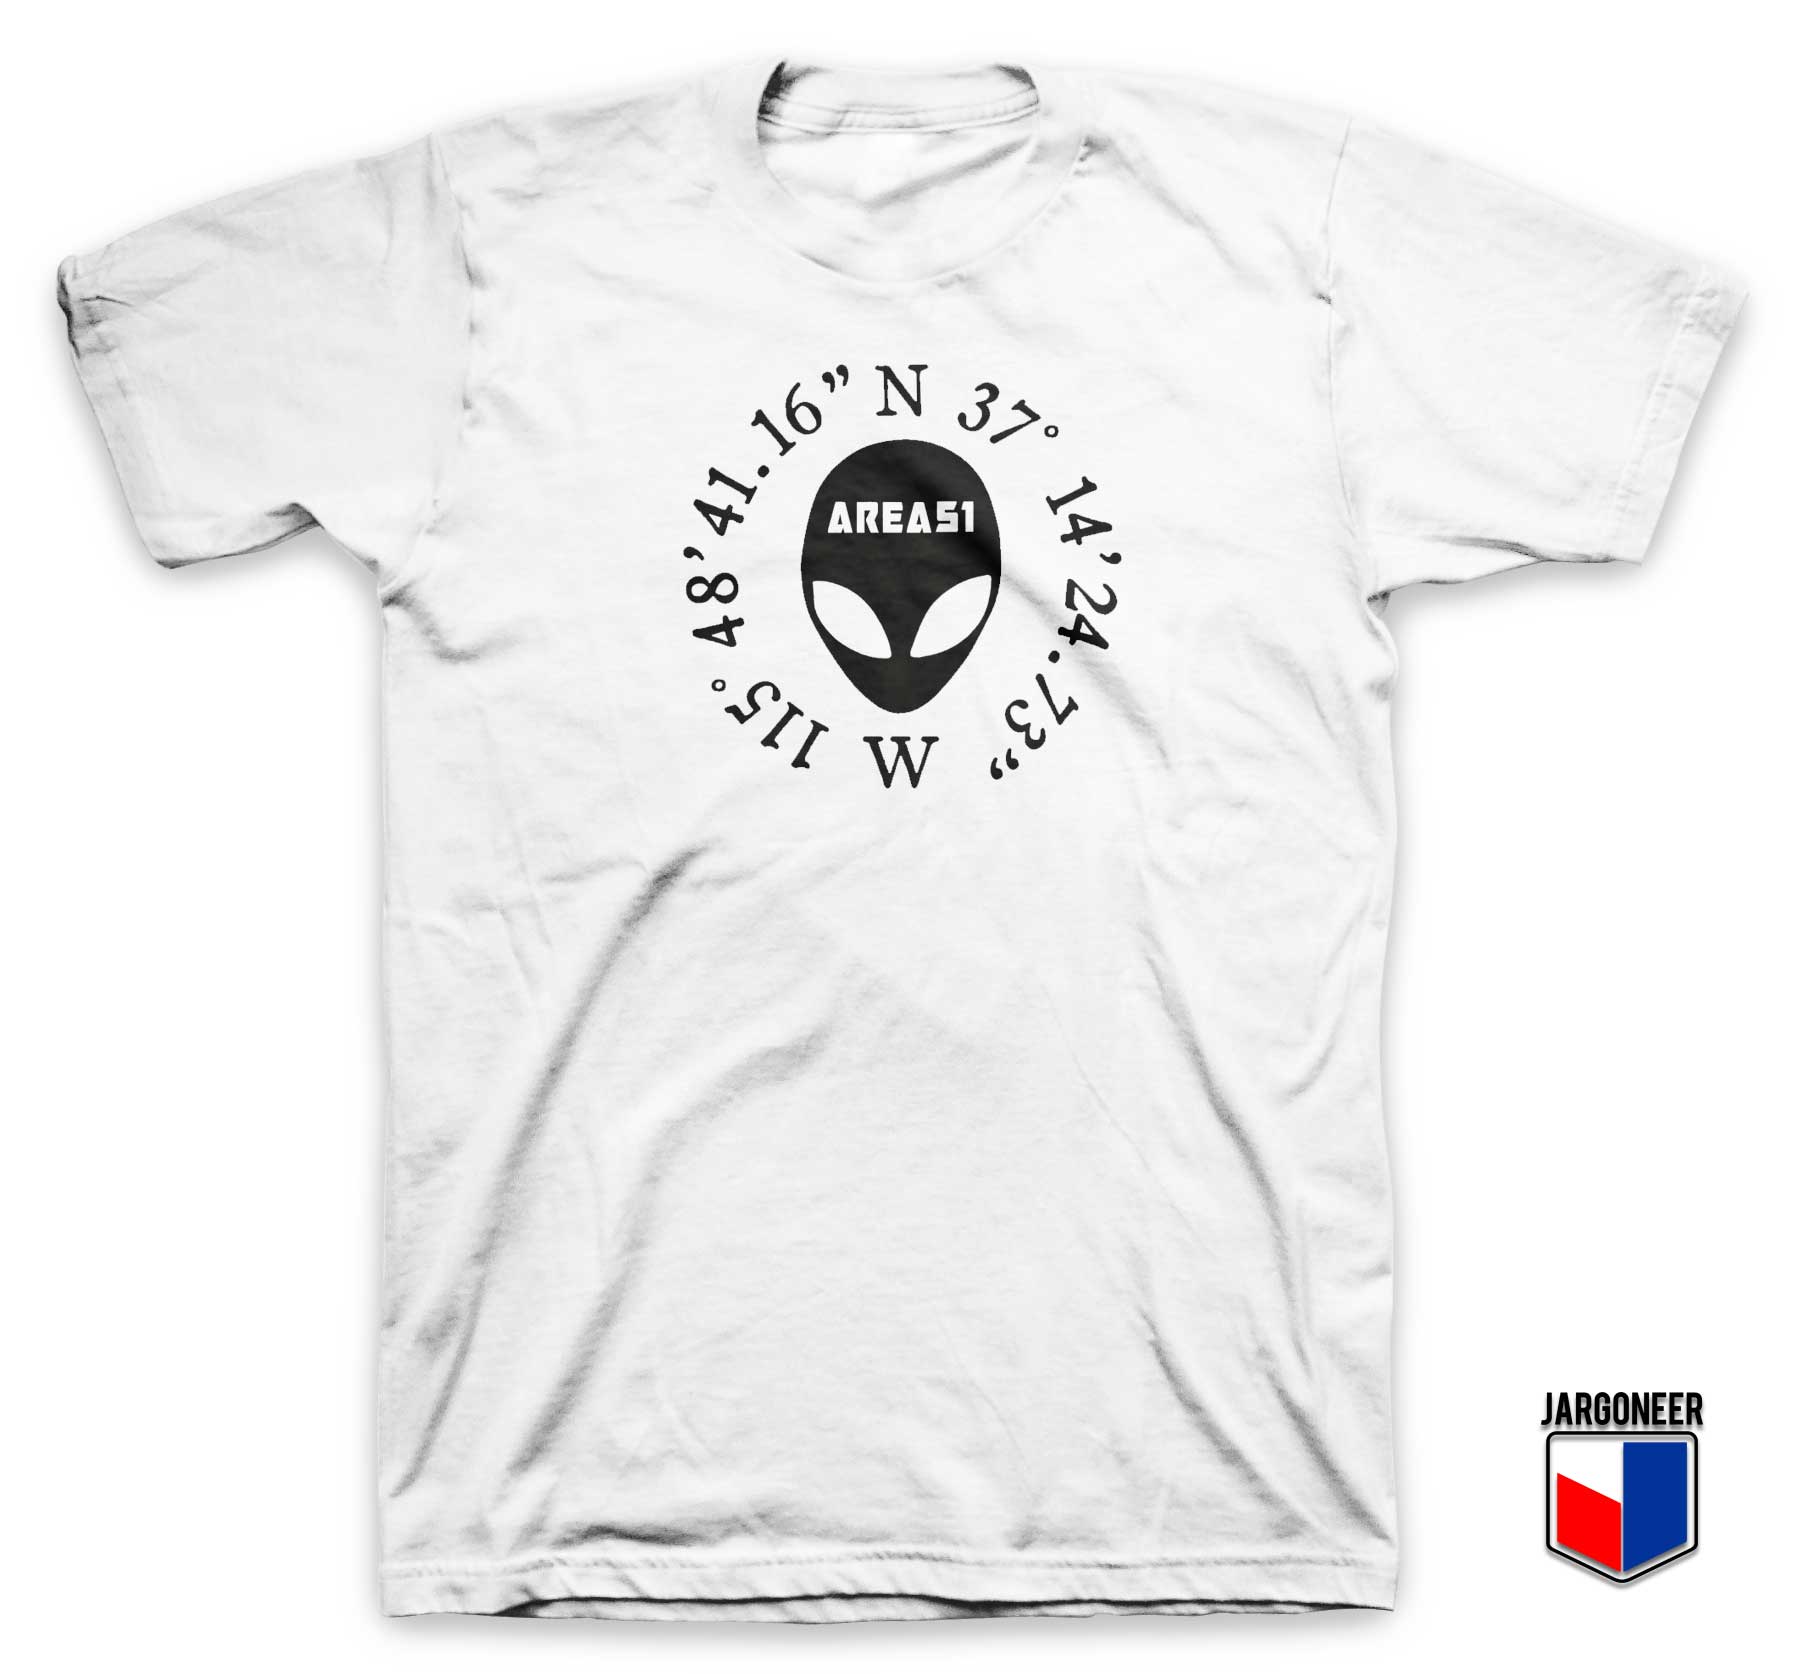 Area 51 Alien Coordinates T Shirt - Shop Unique Graphic Cool Shirt Designs